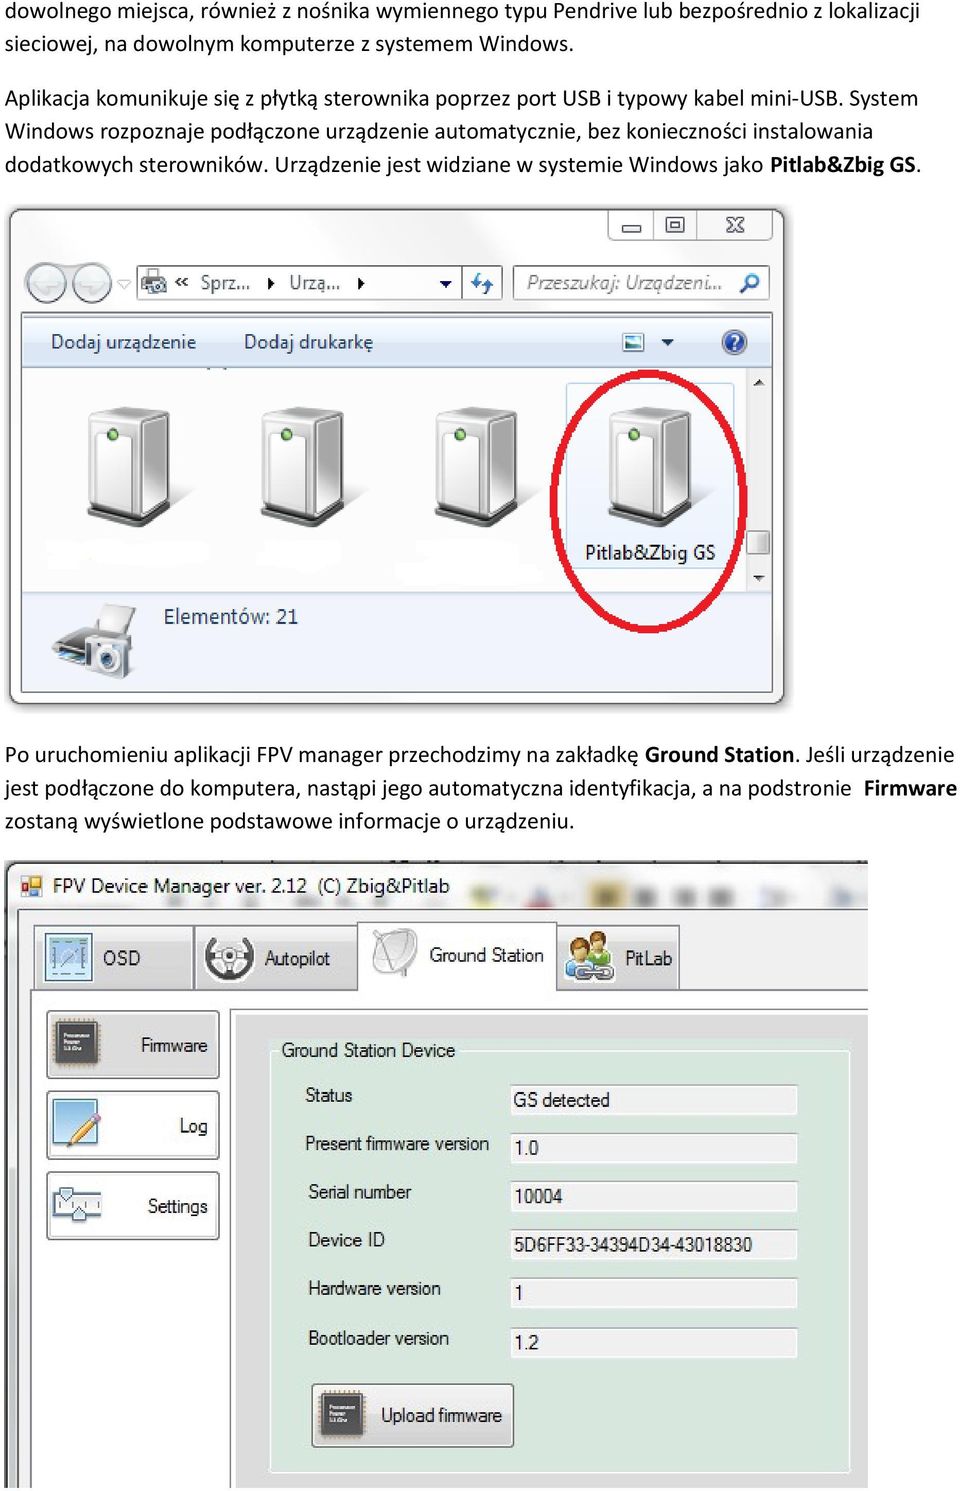 System Windows rozpoznaje podłączone urządzenie automatycznie, bez konieczności instalowania dodatkowych sterowników.